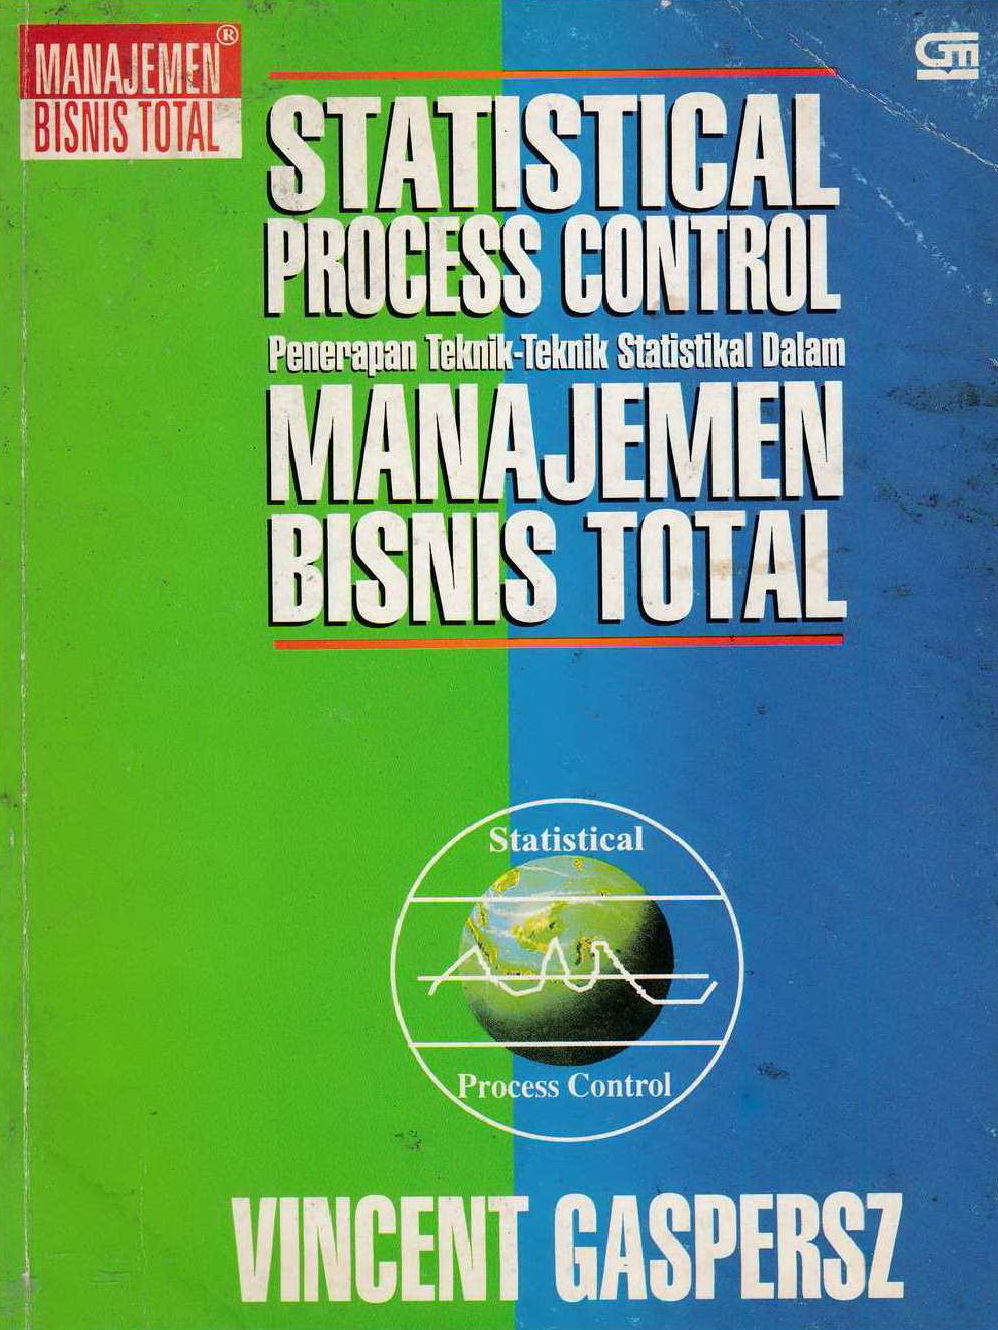 1998 Statistical Process Control Penerapan Teknik-Teknik Statistikal Dalam Manajemen Bisnis Total VG